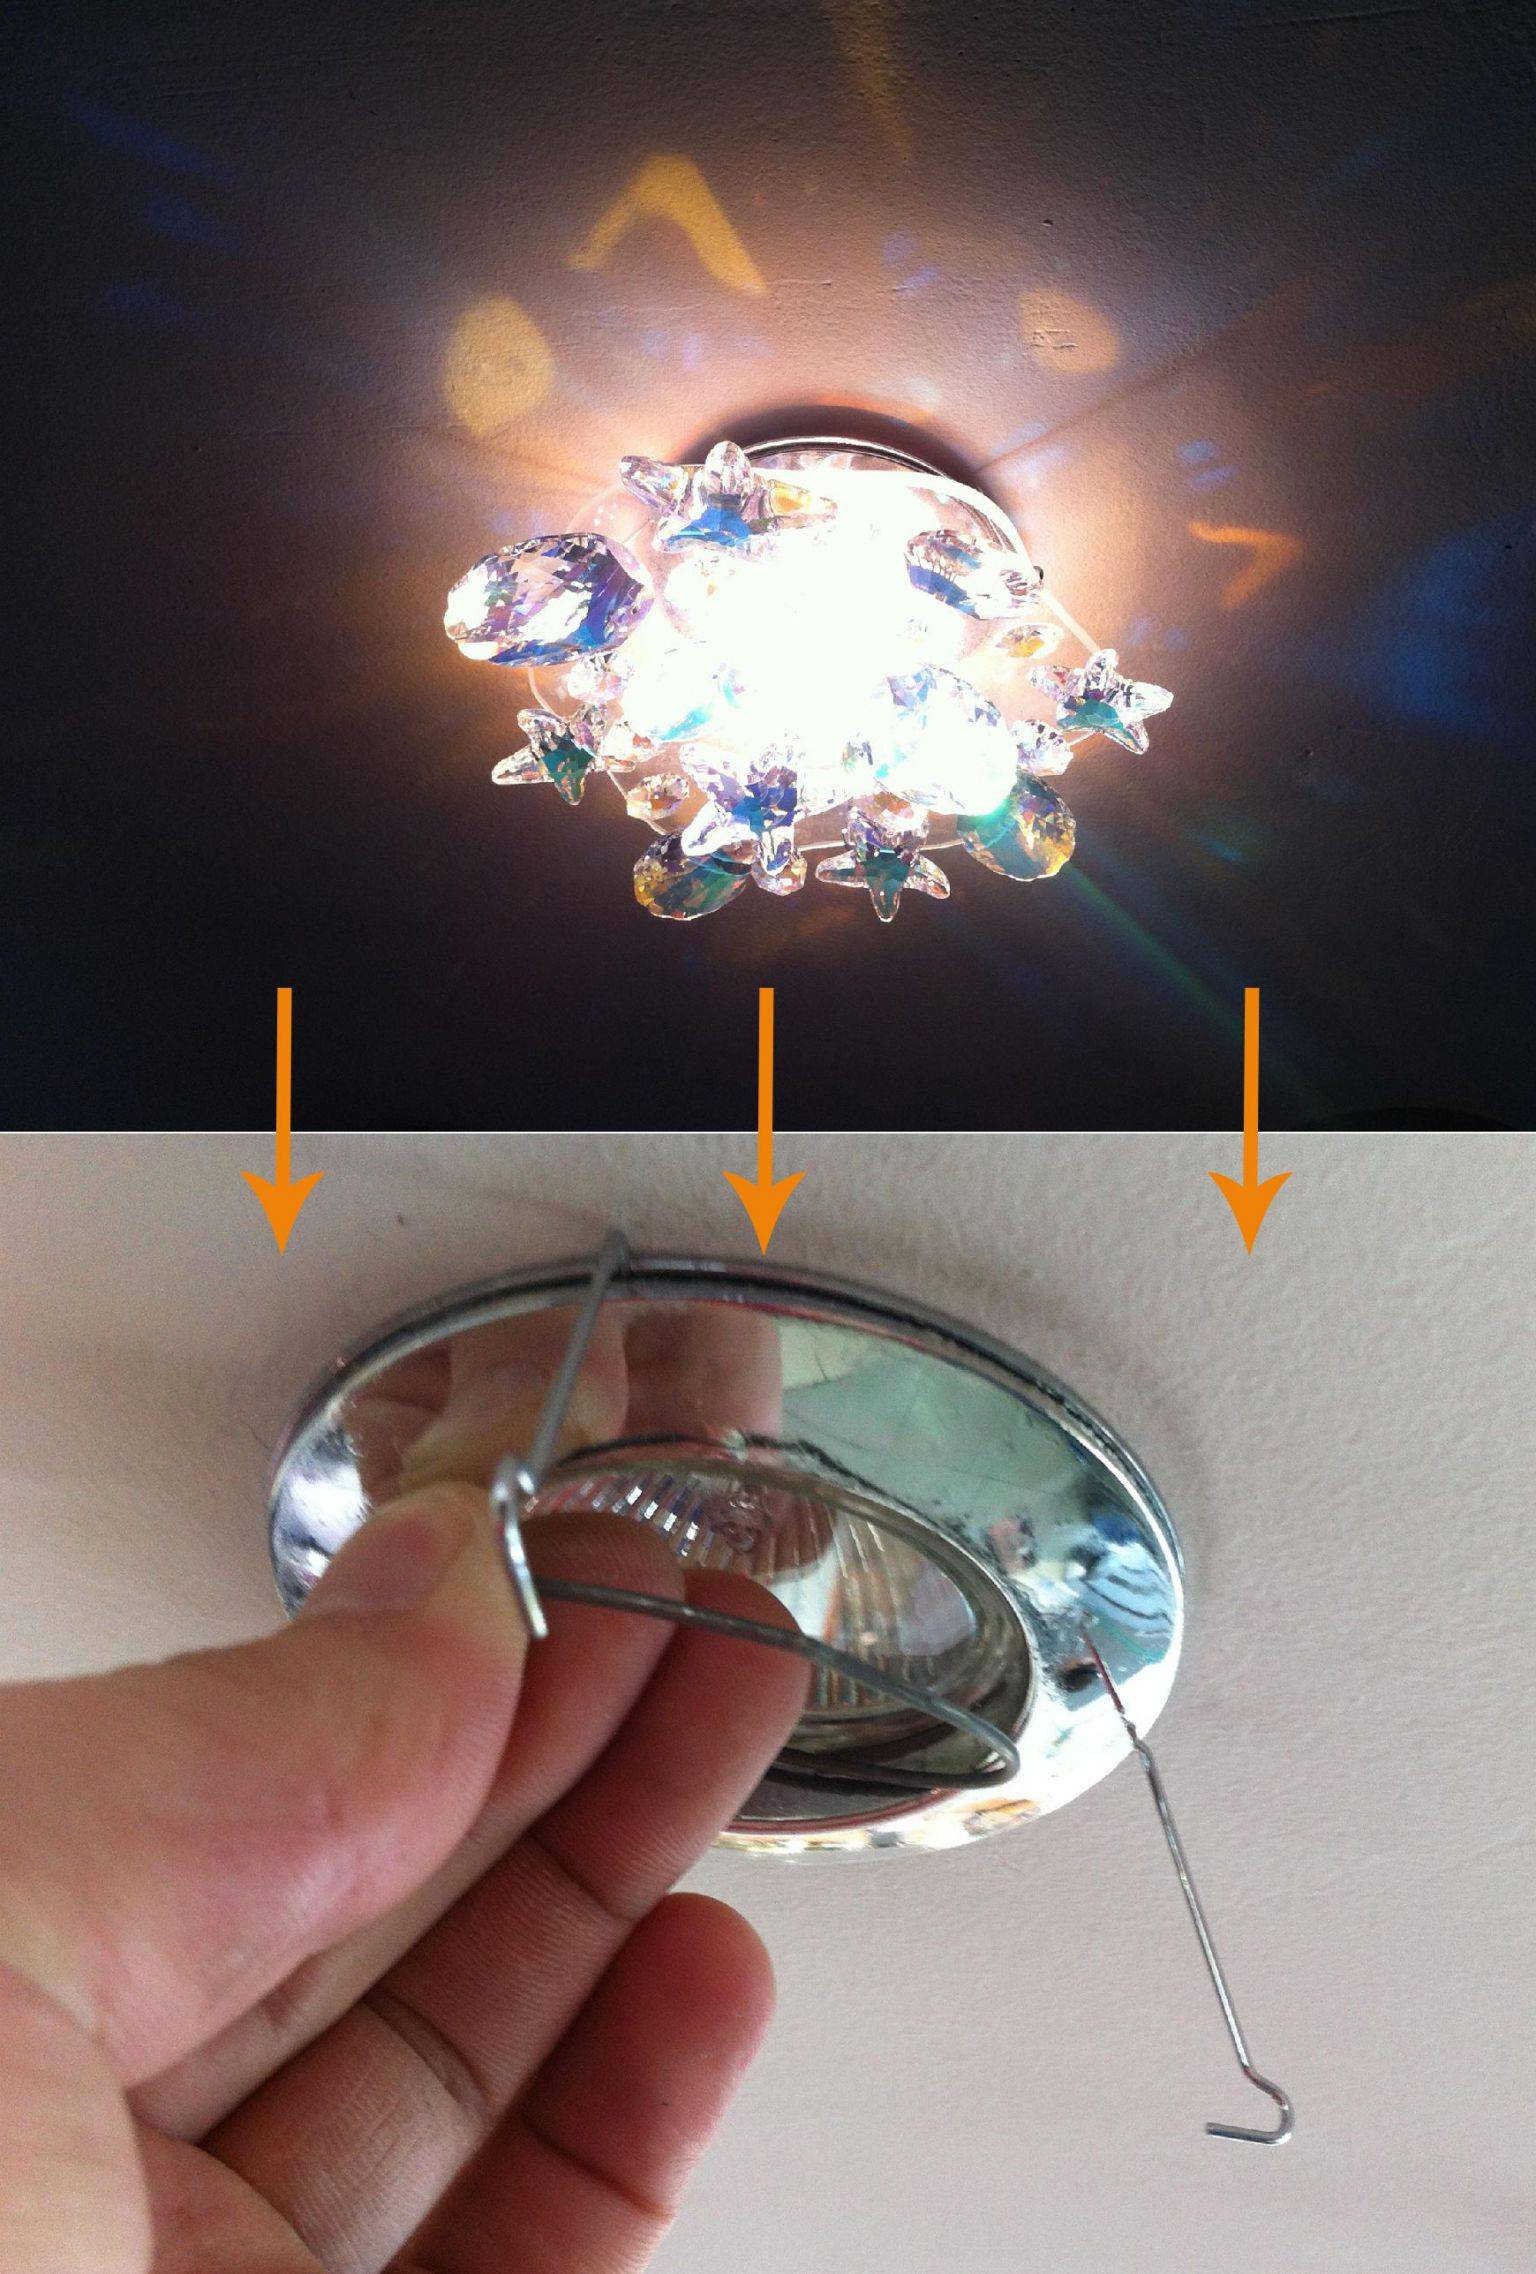 Как поменять лампу на натяжном потолке?